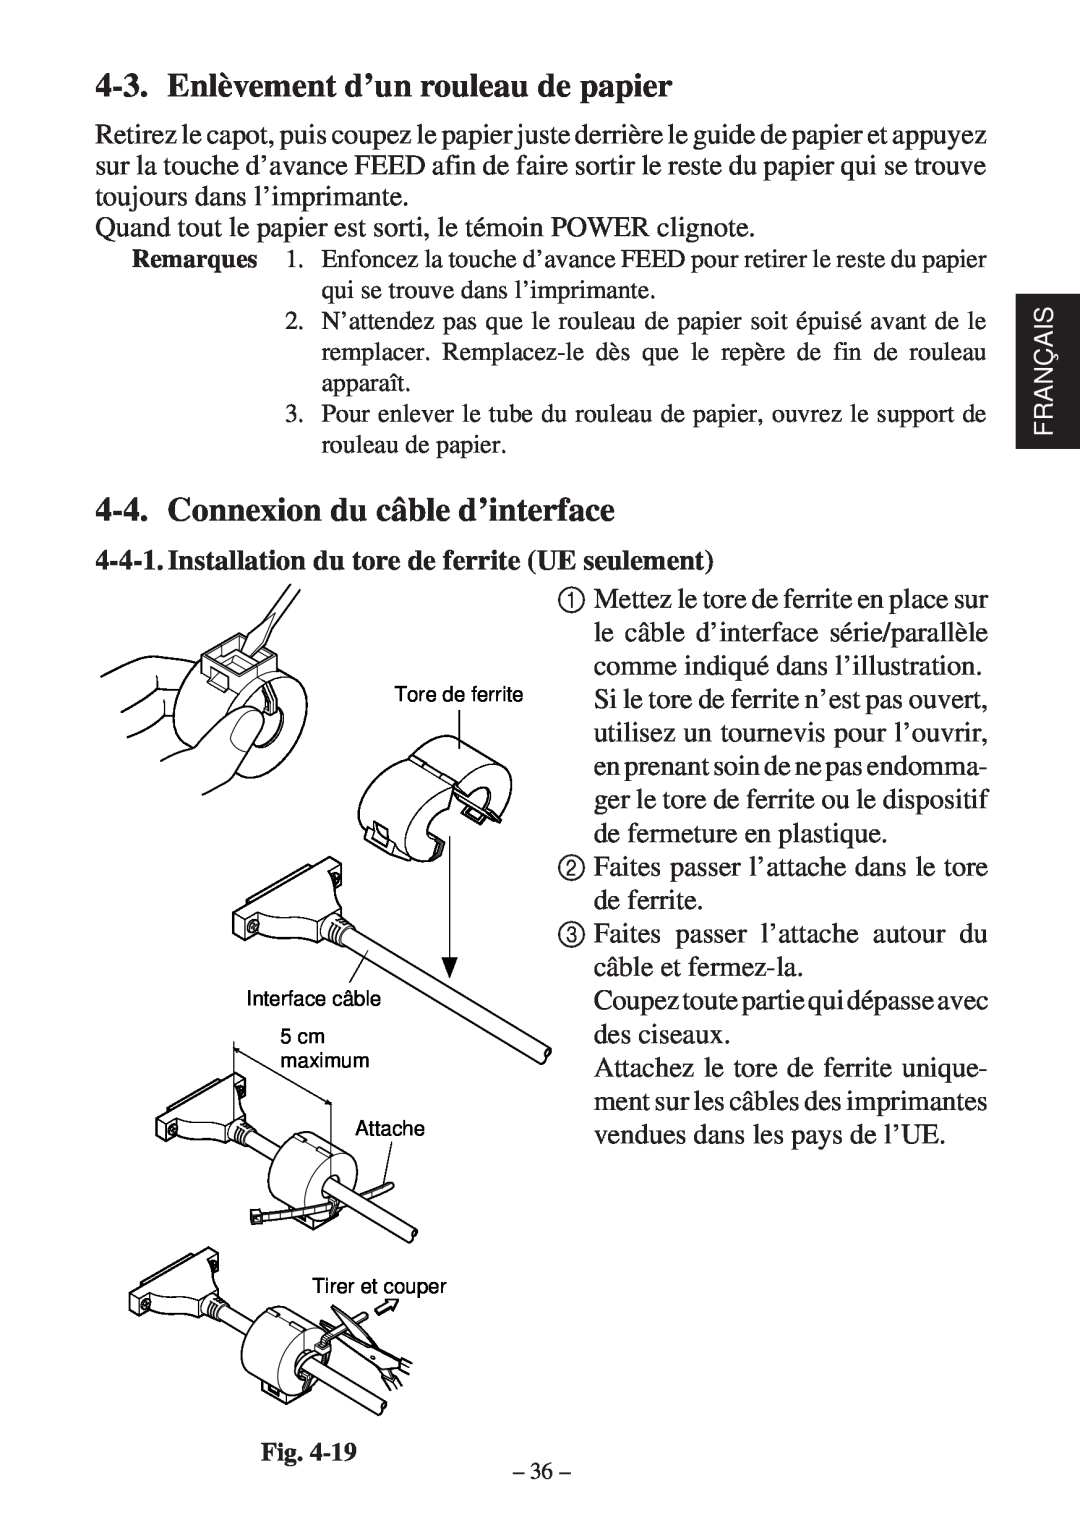 Star Micronics SP200F user manual Enlèvement d’un rouleau de papier, Connexion du câble d’interface 